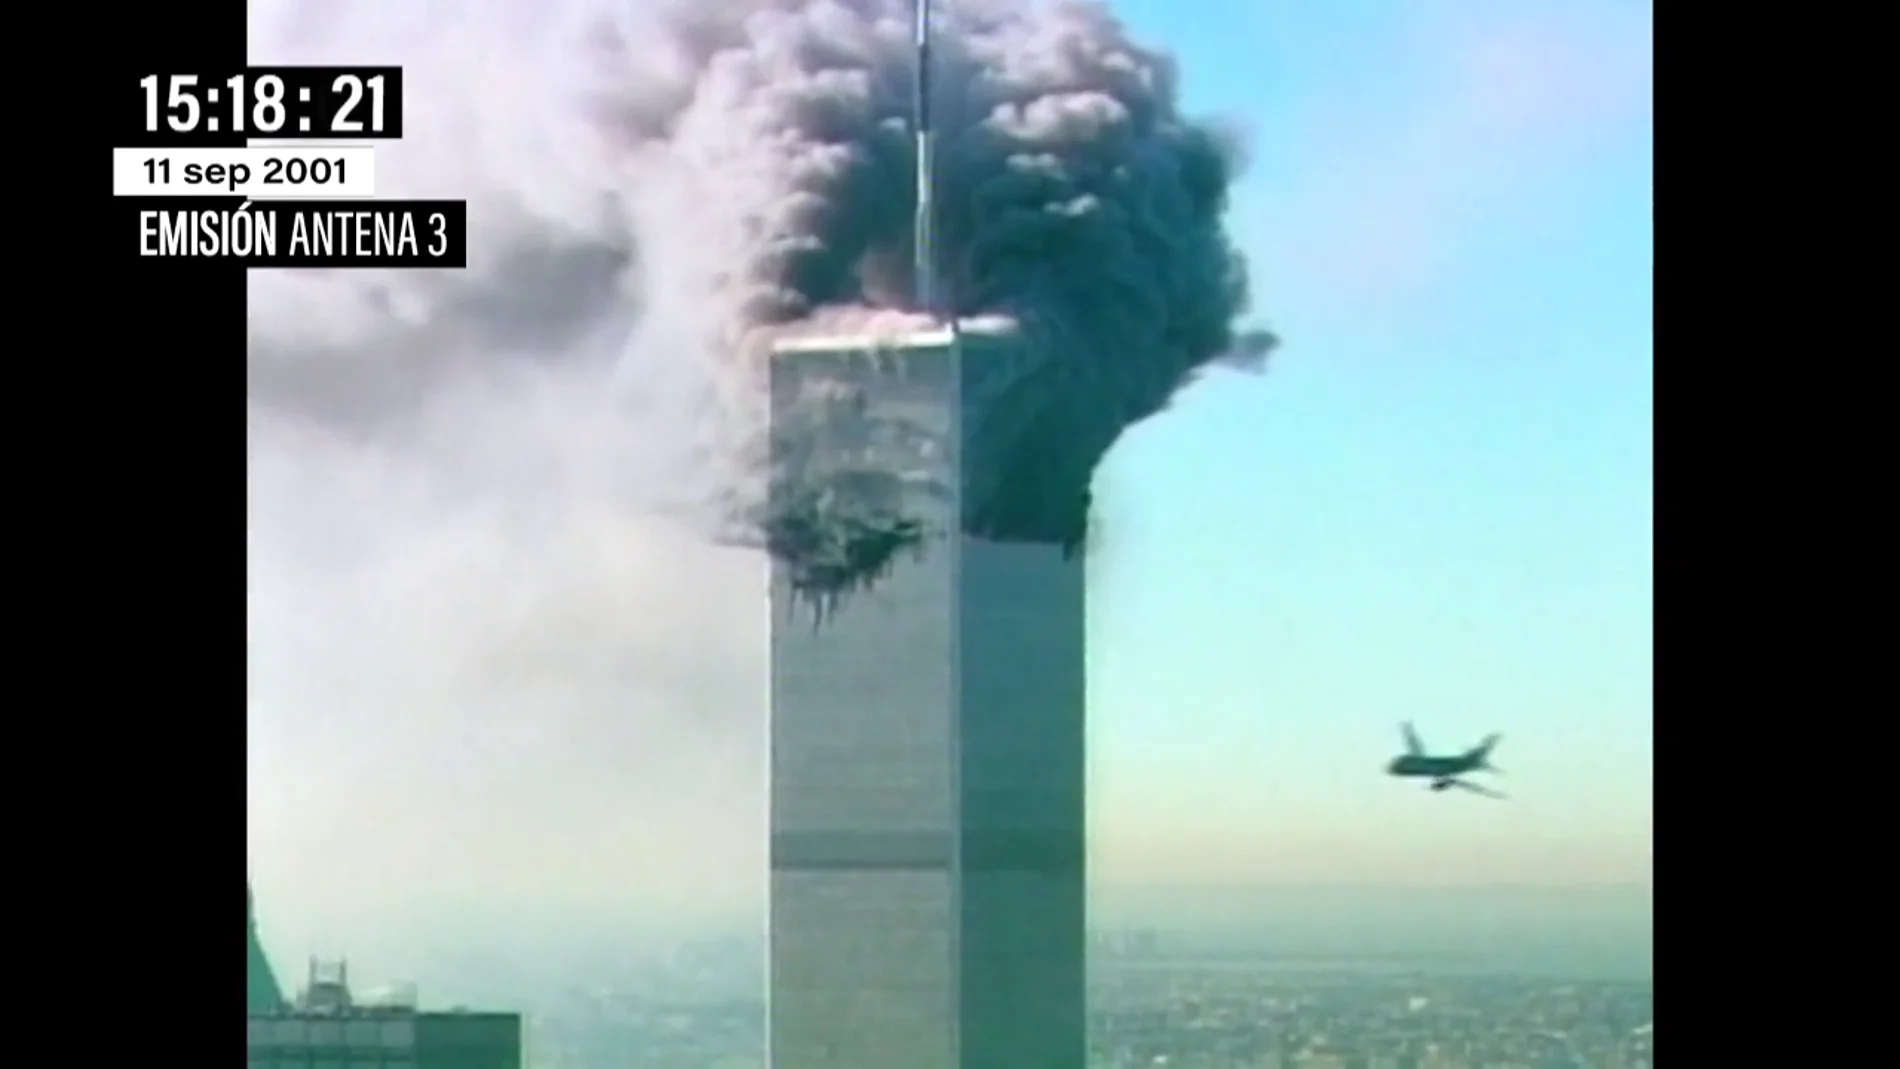 Así vivió Matías Prats en directo las imágenes del choque del avión contra la segunda Torre Gemela el 11S: "¡Allá va, dios santo!"